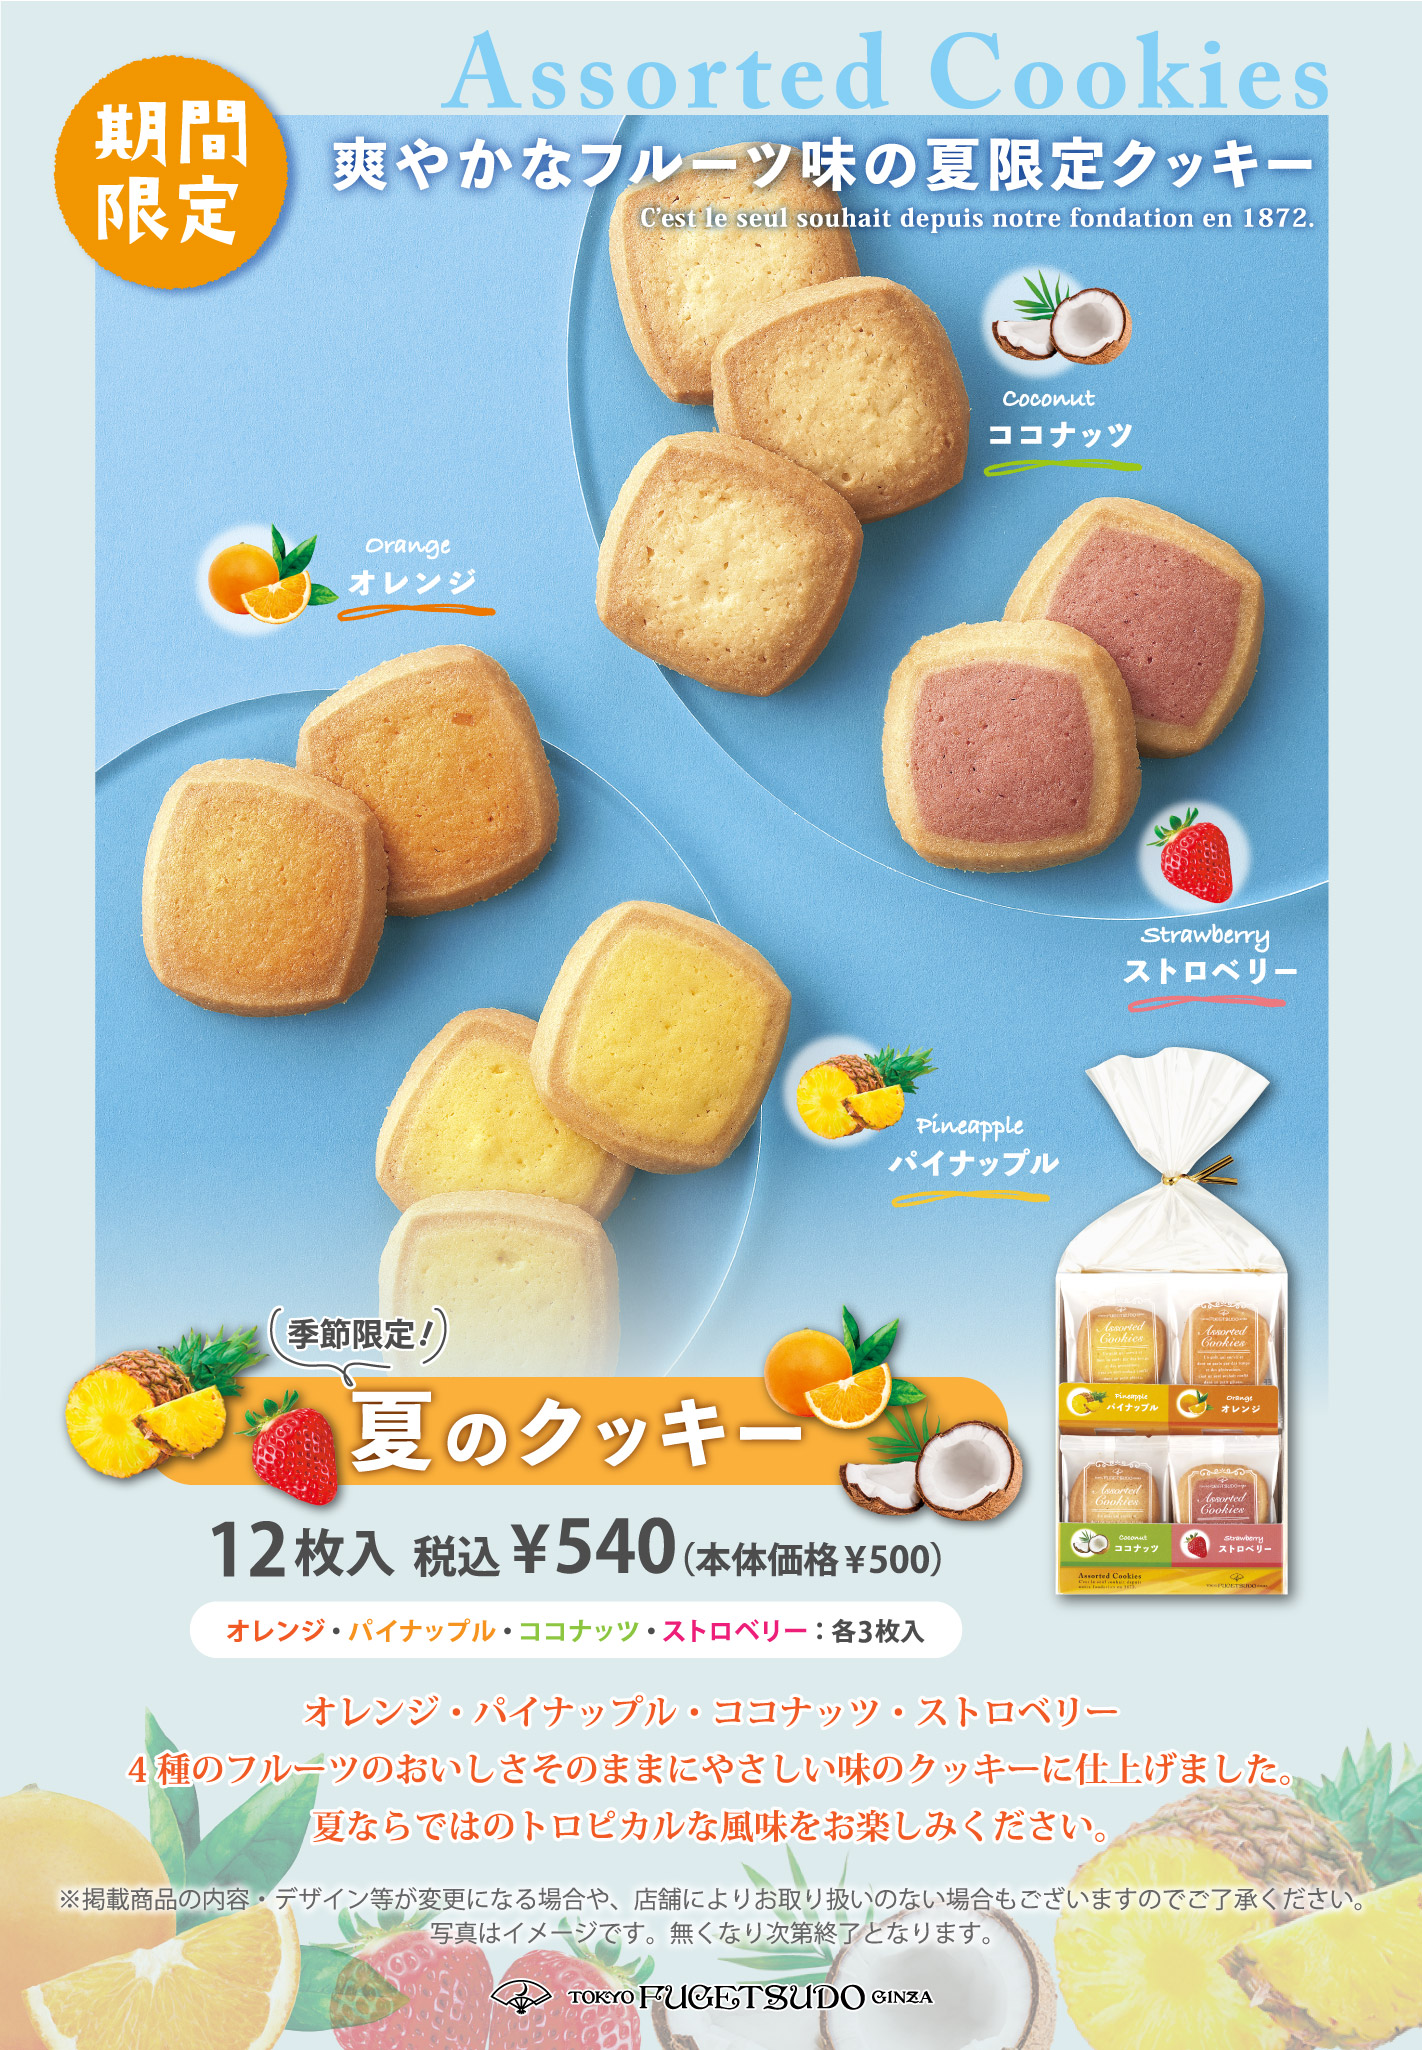 オレンジ・パイナップル・ココナッツ・ストロベリー、4種のフルーツのおいしさそのままにやさしい味のクッキーに仕上げました。夏ならではのトロピカルな風味をお楽しみください。 12枚入 税込¥540（本体価格¥500）